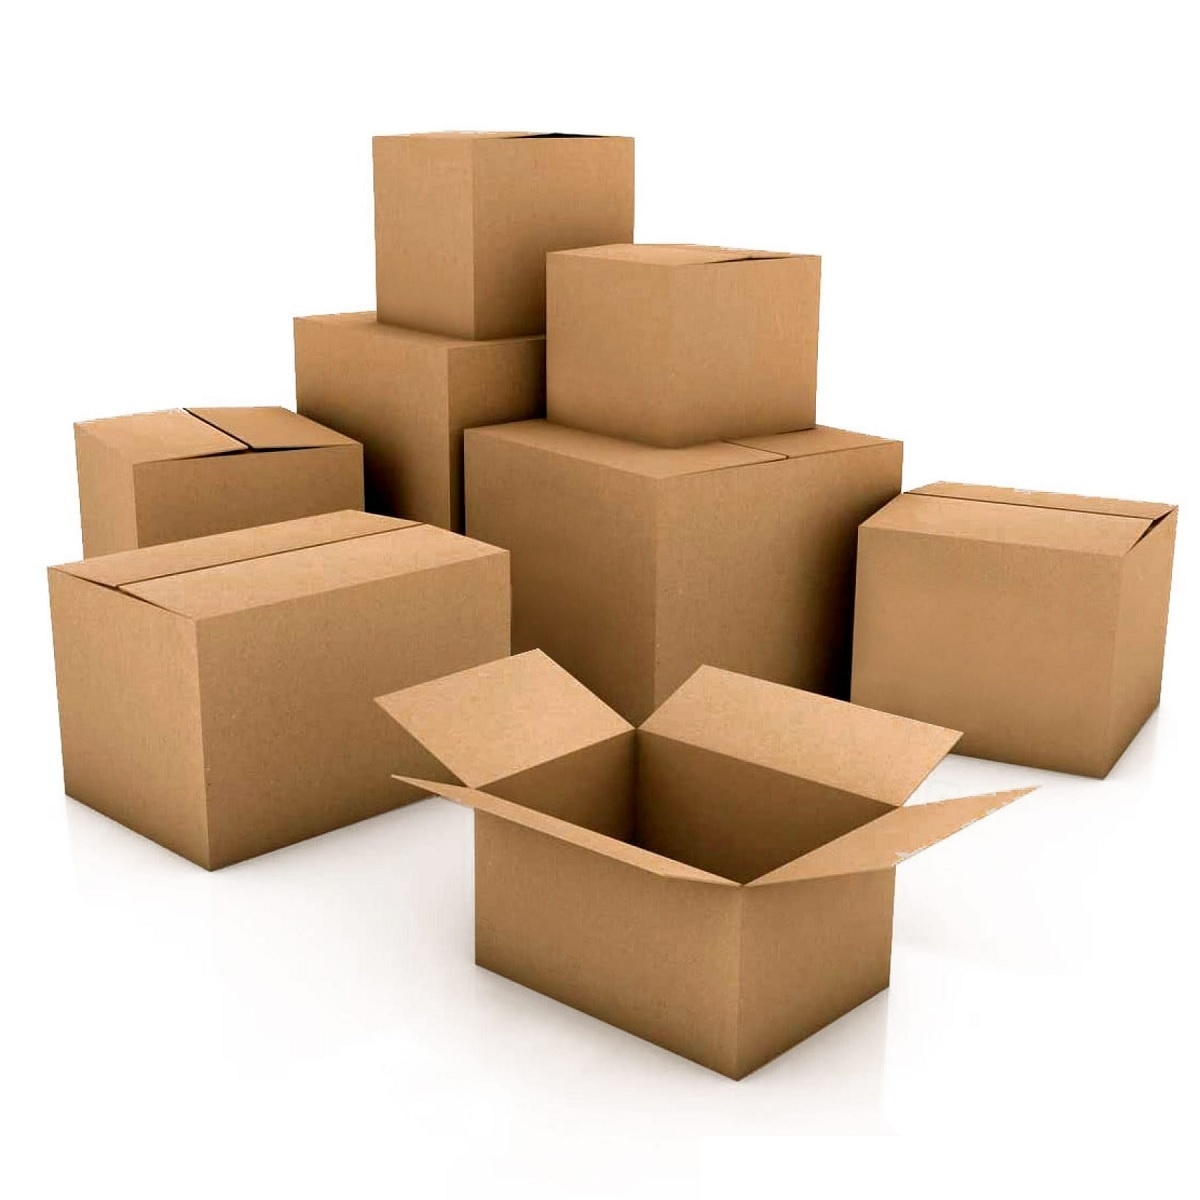 Kapper Nebu Shipley Verpakkingen kopen? Bestel online - VerpakkingenXL